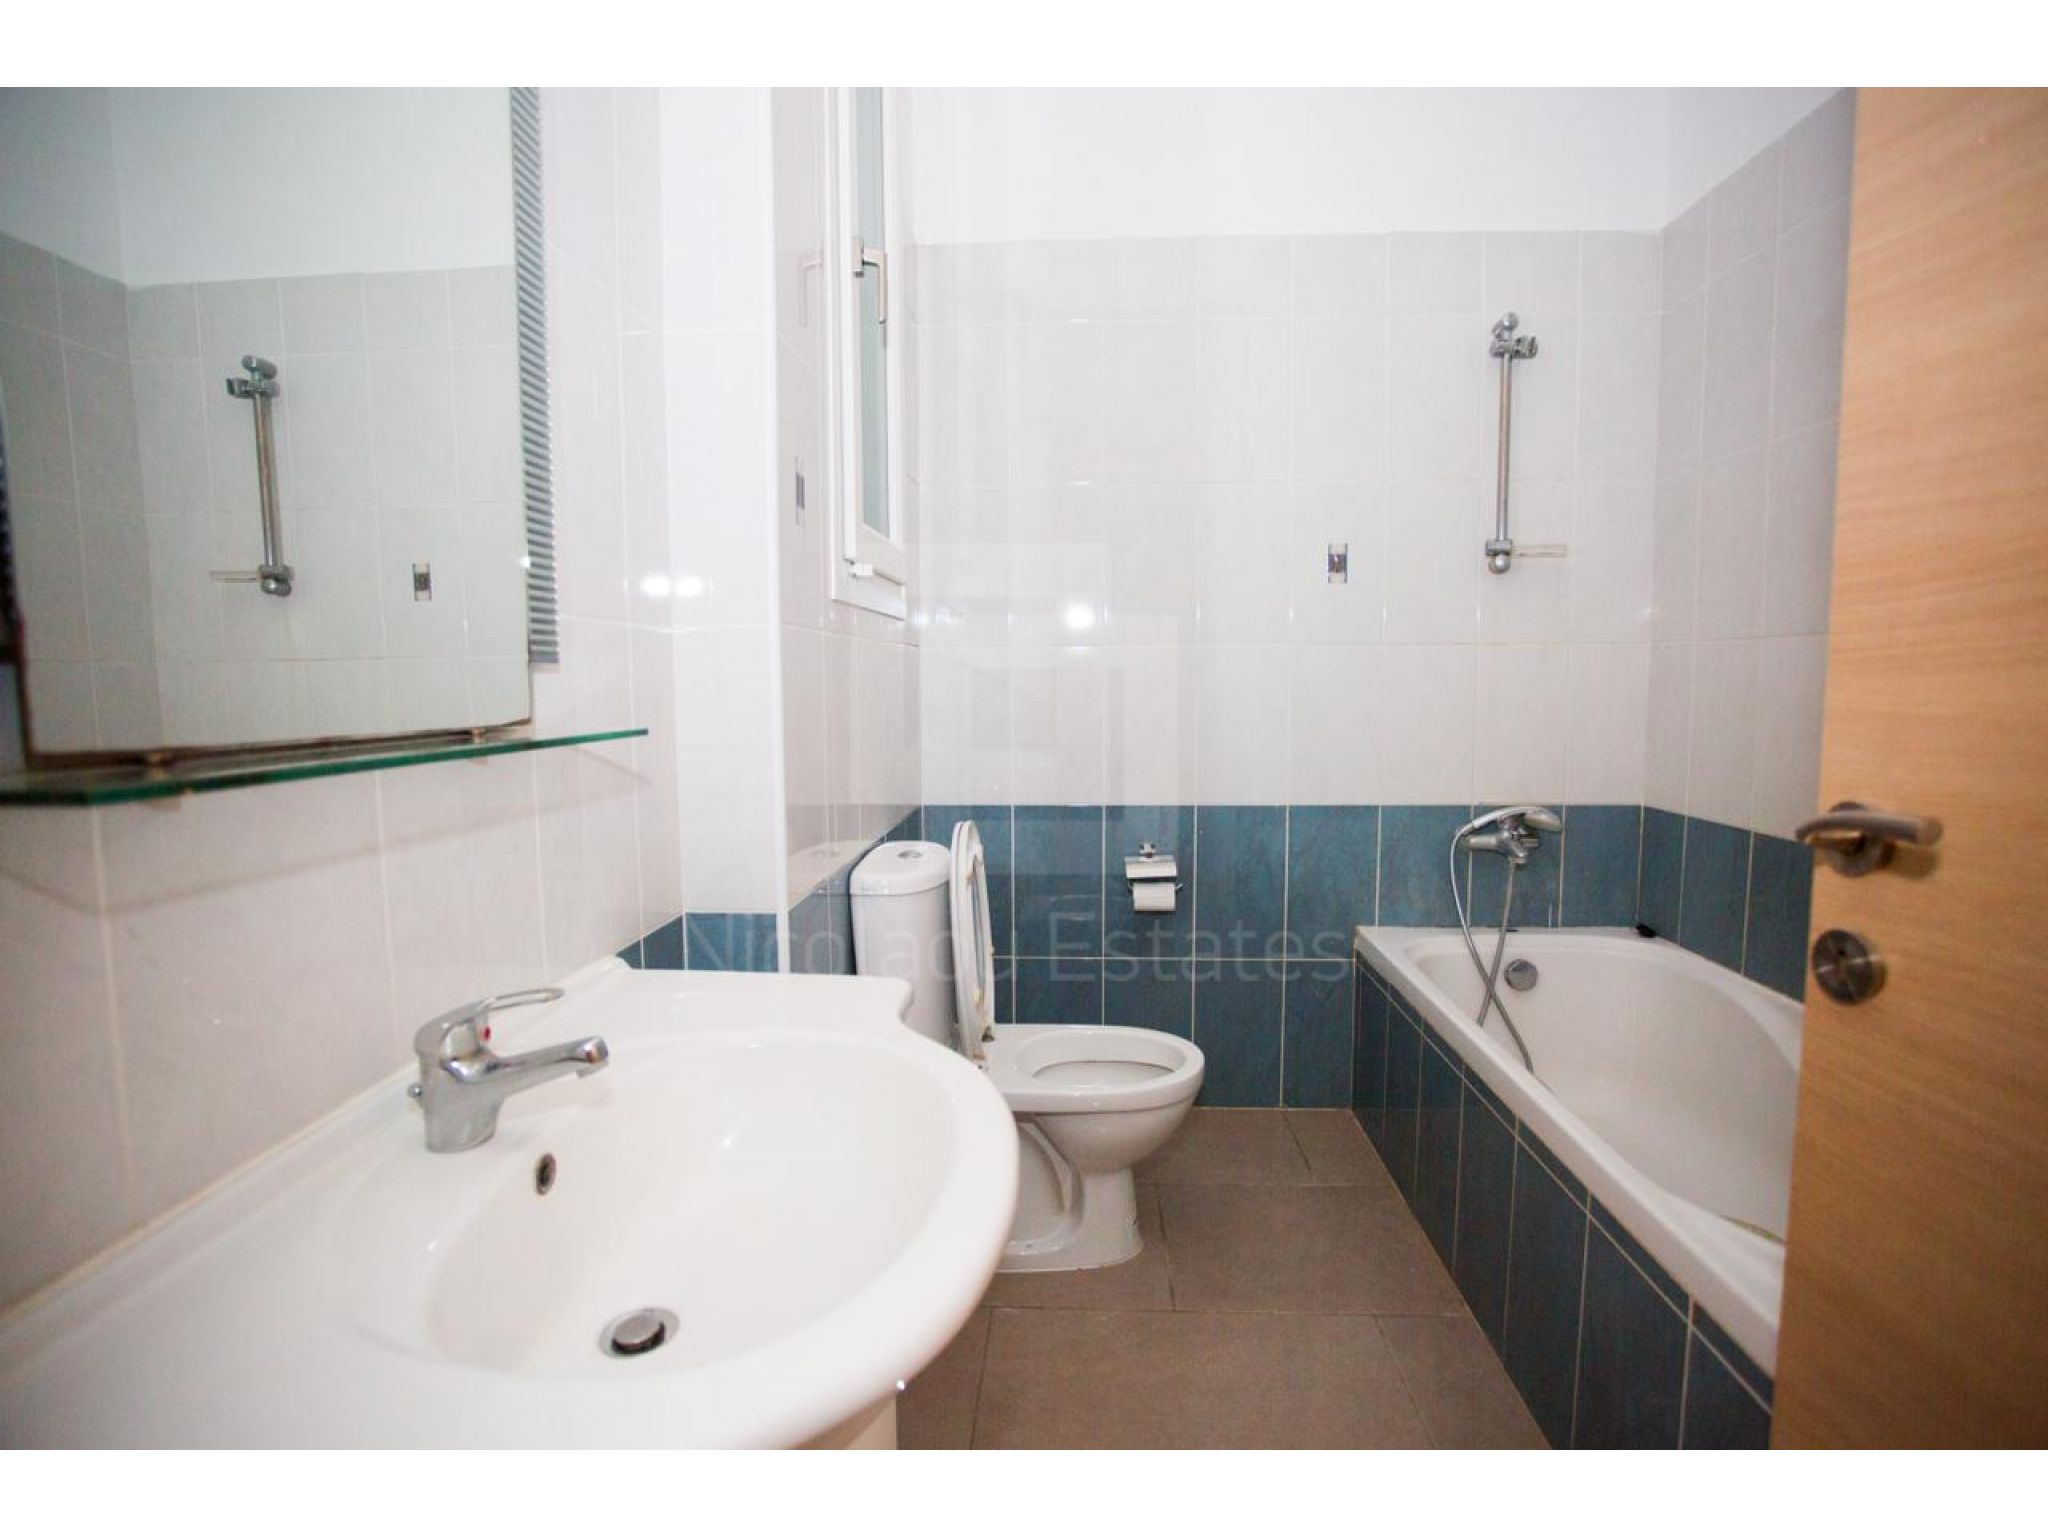 https://www.propertiescy.com/images/uploads/listings/large/17154-1627456205_90-bathroom.jpg